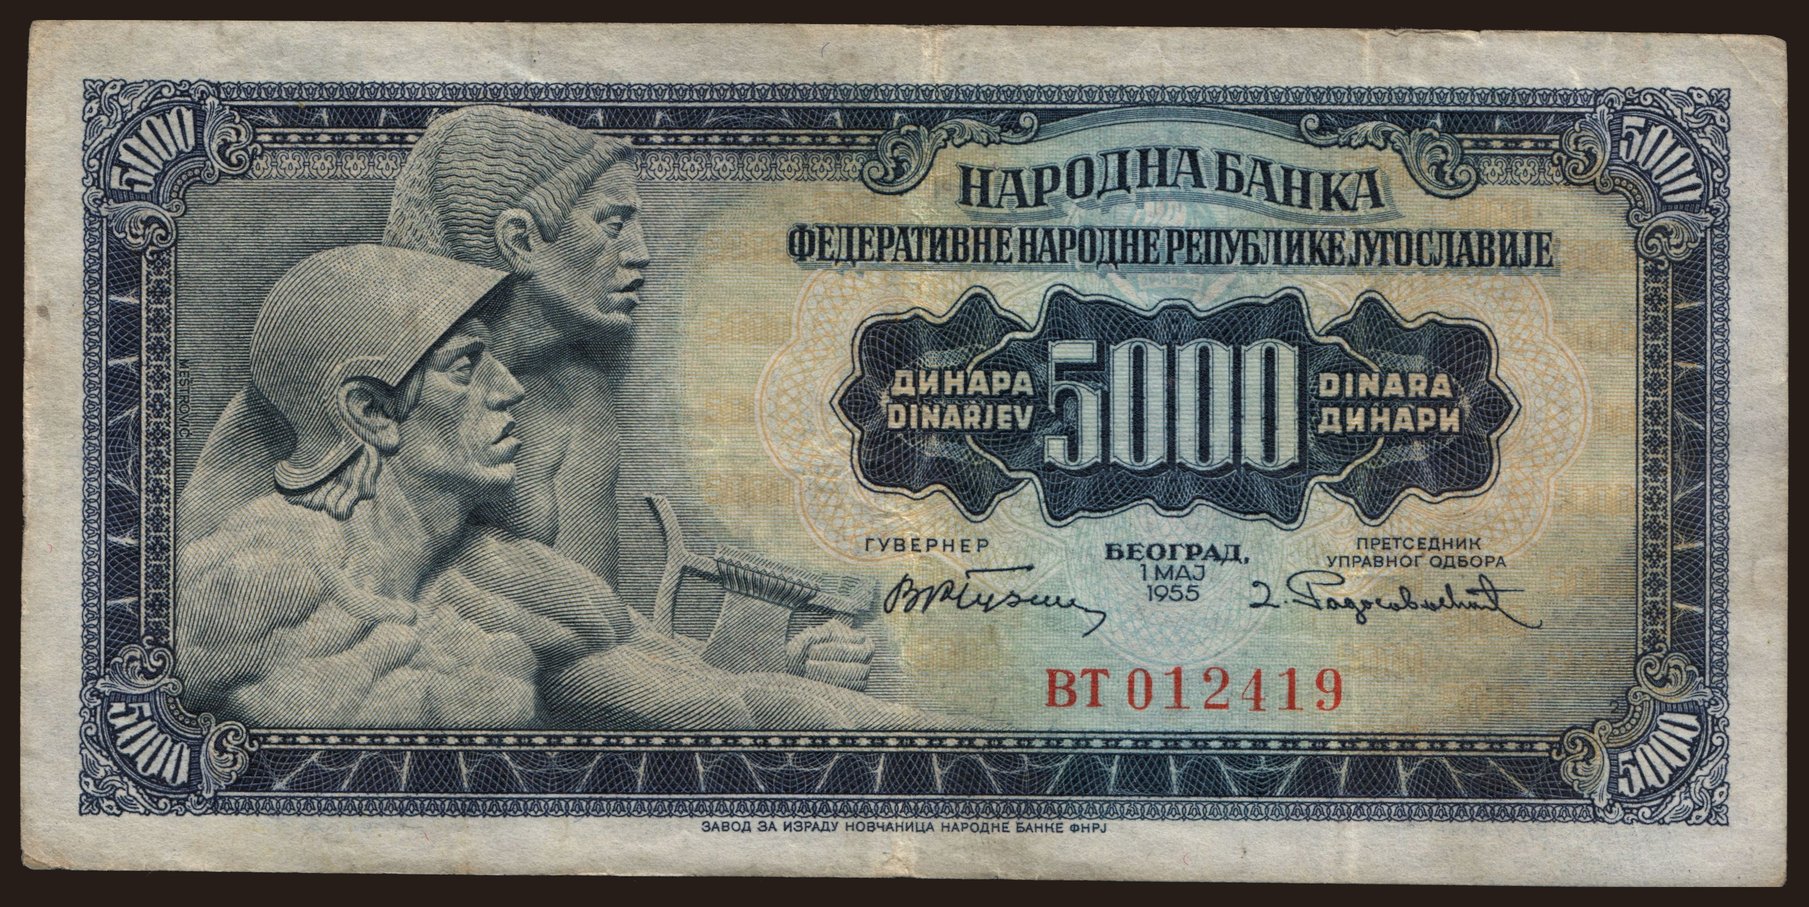 5000 dinara, 1955